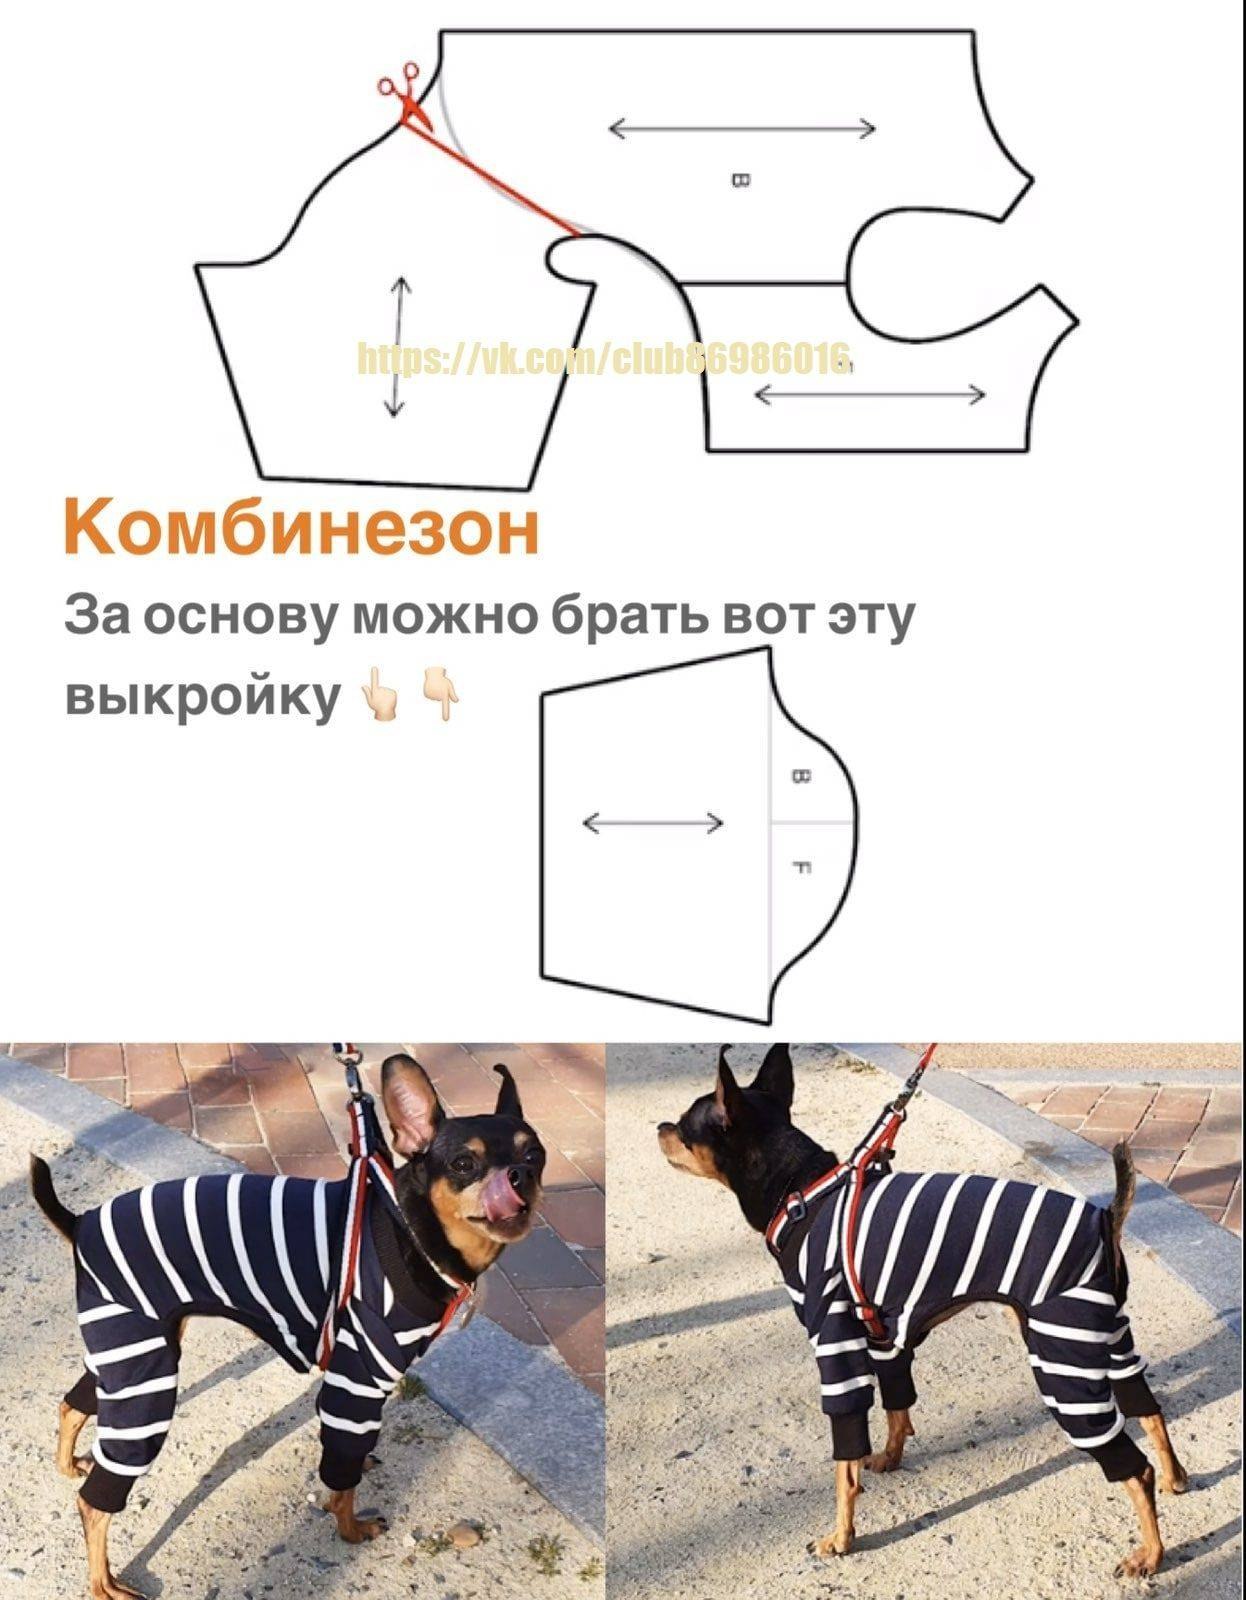 Выкройки одежды для собак - одеваем собаку бесплатно и самостоятельно